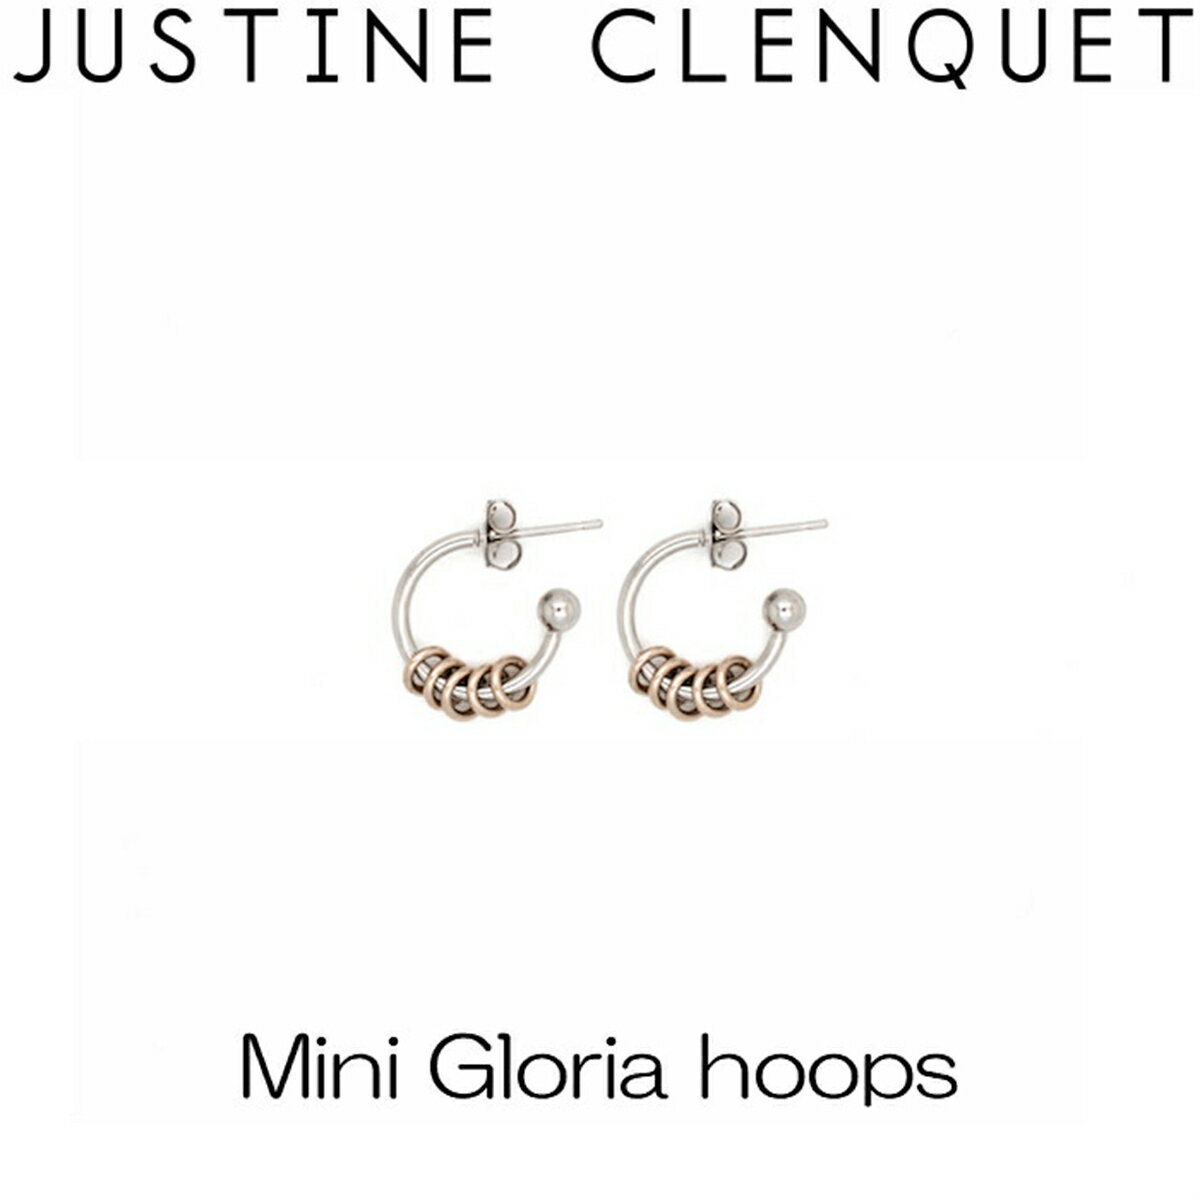 ジュスティーヌクランケ Justine Clenquet ミニ グロリア フープ Mini Gloria hoops ピアス 2個セット レディース アクセサリー